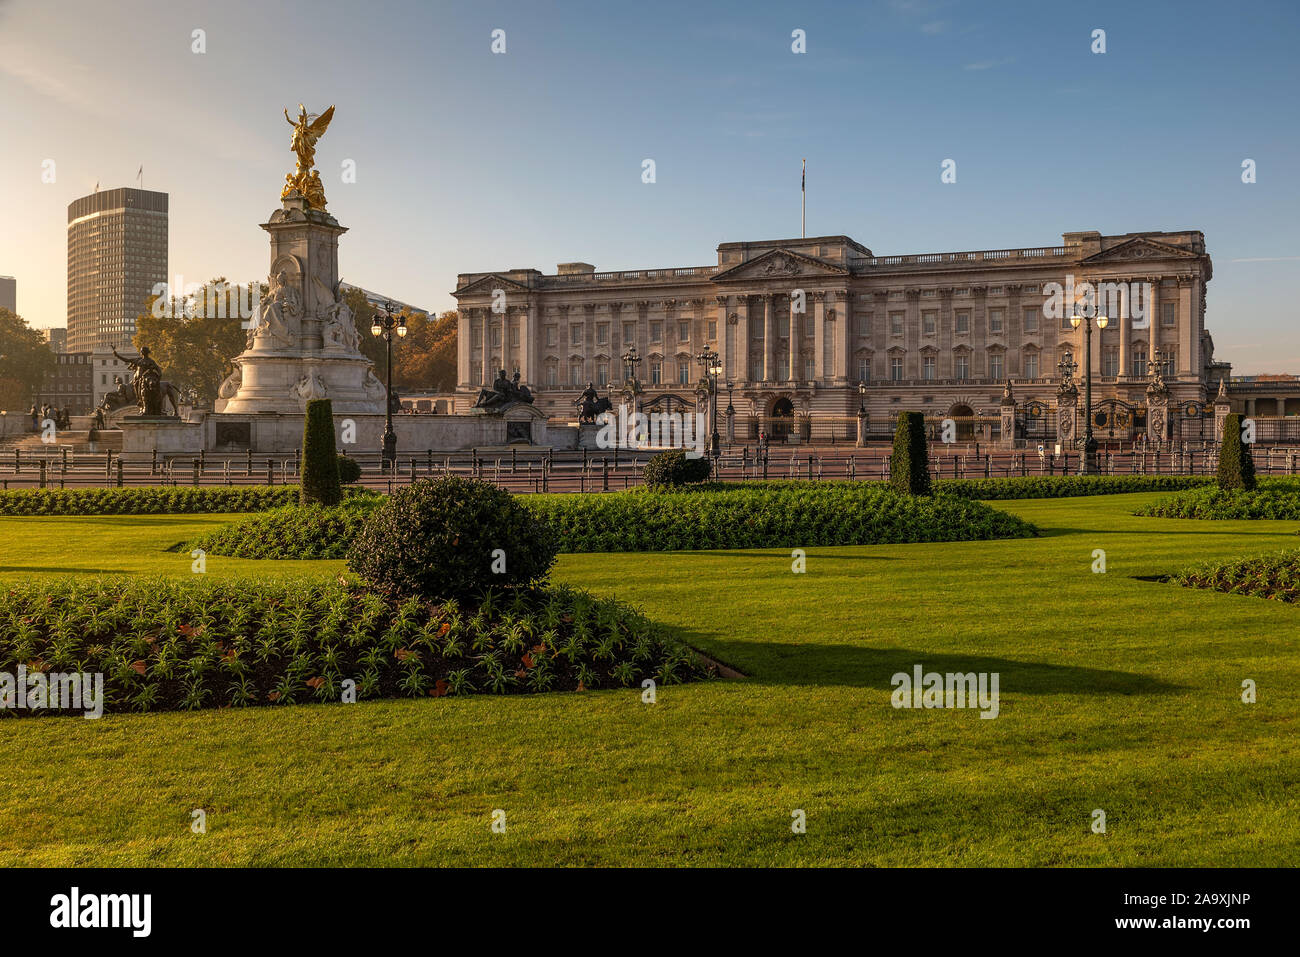 Buckingham Palace am Morgen. Keine Menschen. Schöne Herbstfarben und Sonnenaufgang. Stockfoto